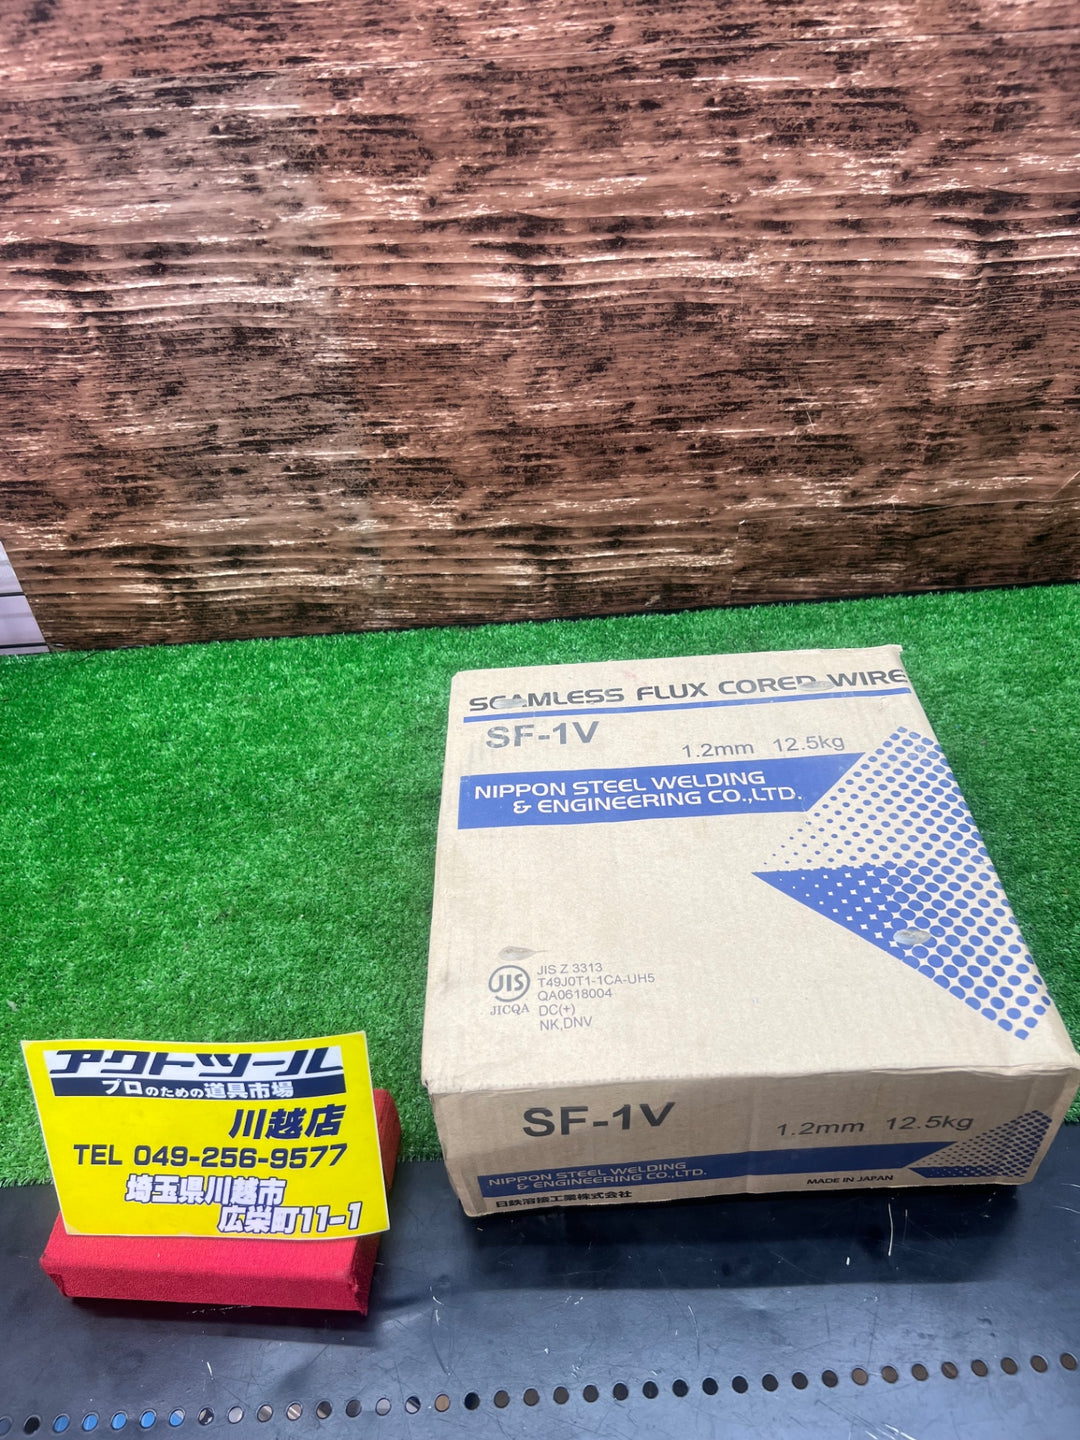 マグ溶接用ソリッドワイヤ 日鉄溶接工業 SF-1V 1.2mm 12.5kg フラックス【川越店】